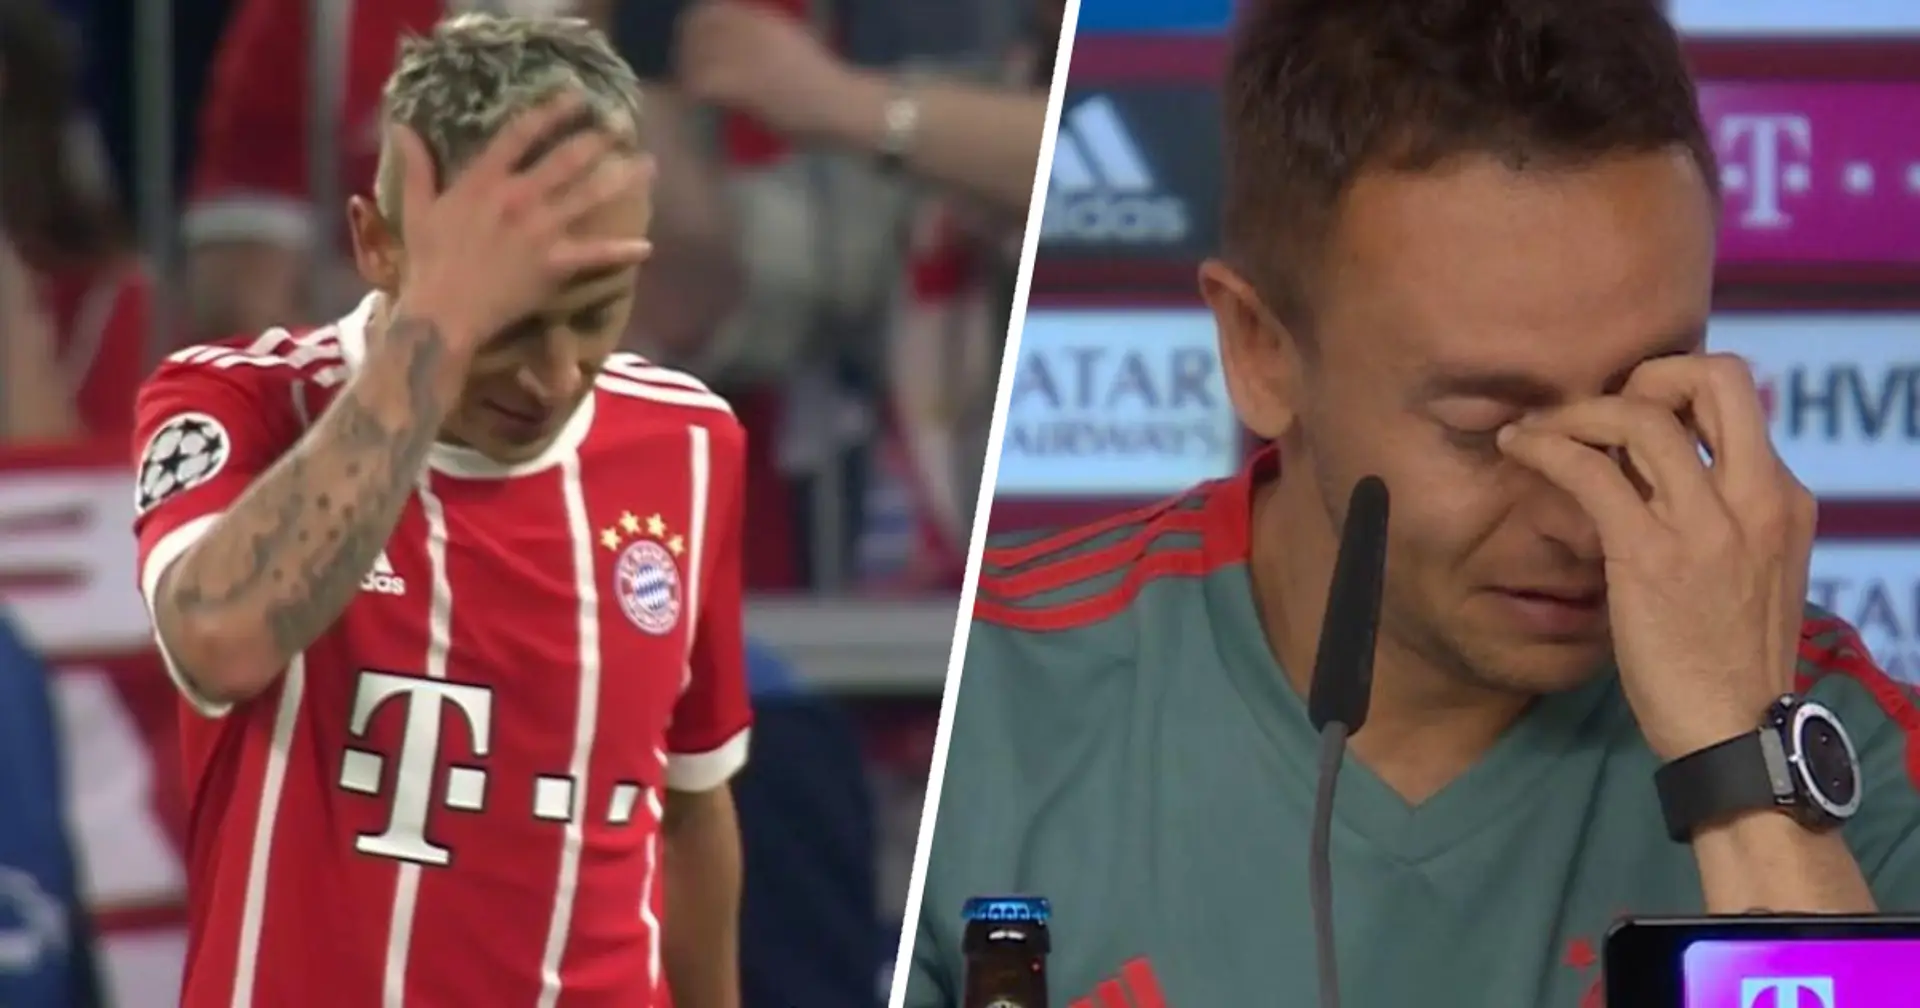 "Wir werden deine Karriere zerstören": Rafinha erzählt, wie er enorme Schwierigkeiten überwinden musste, um zu Bayern zu wechseln